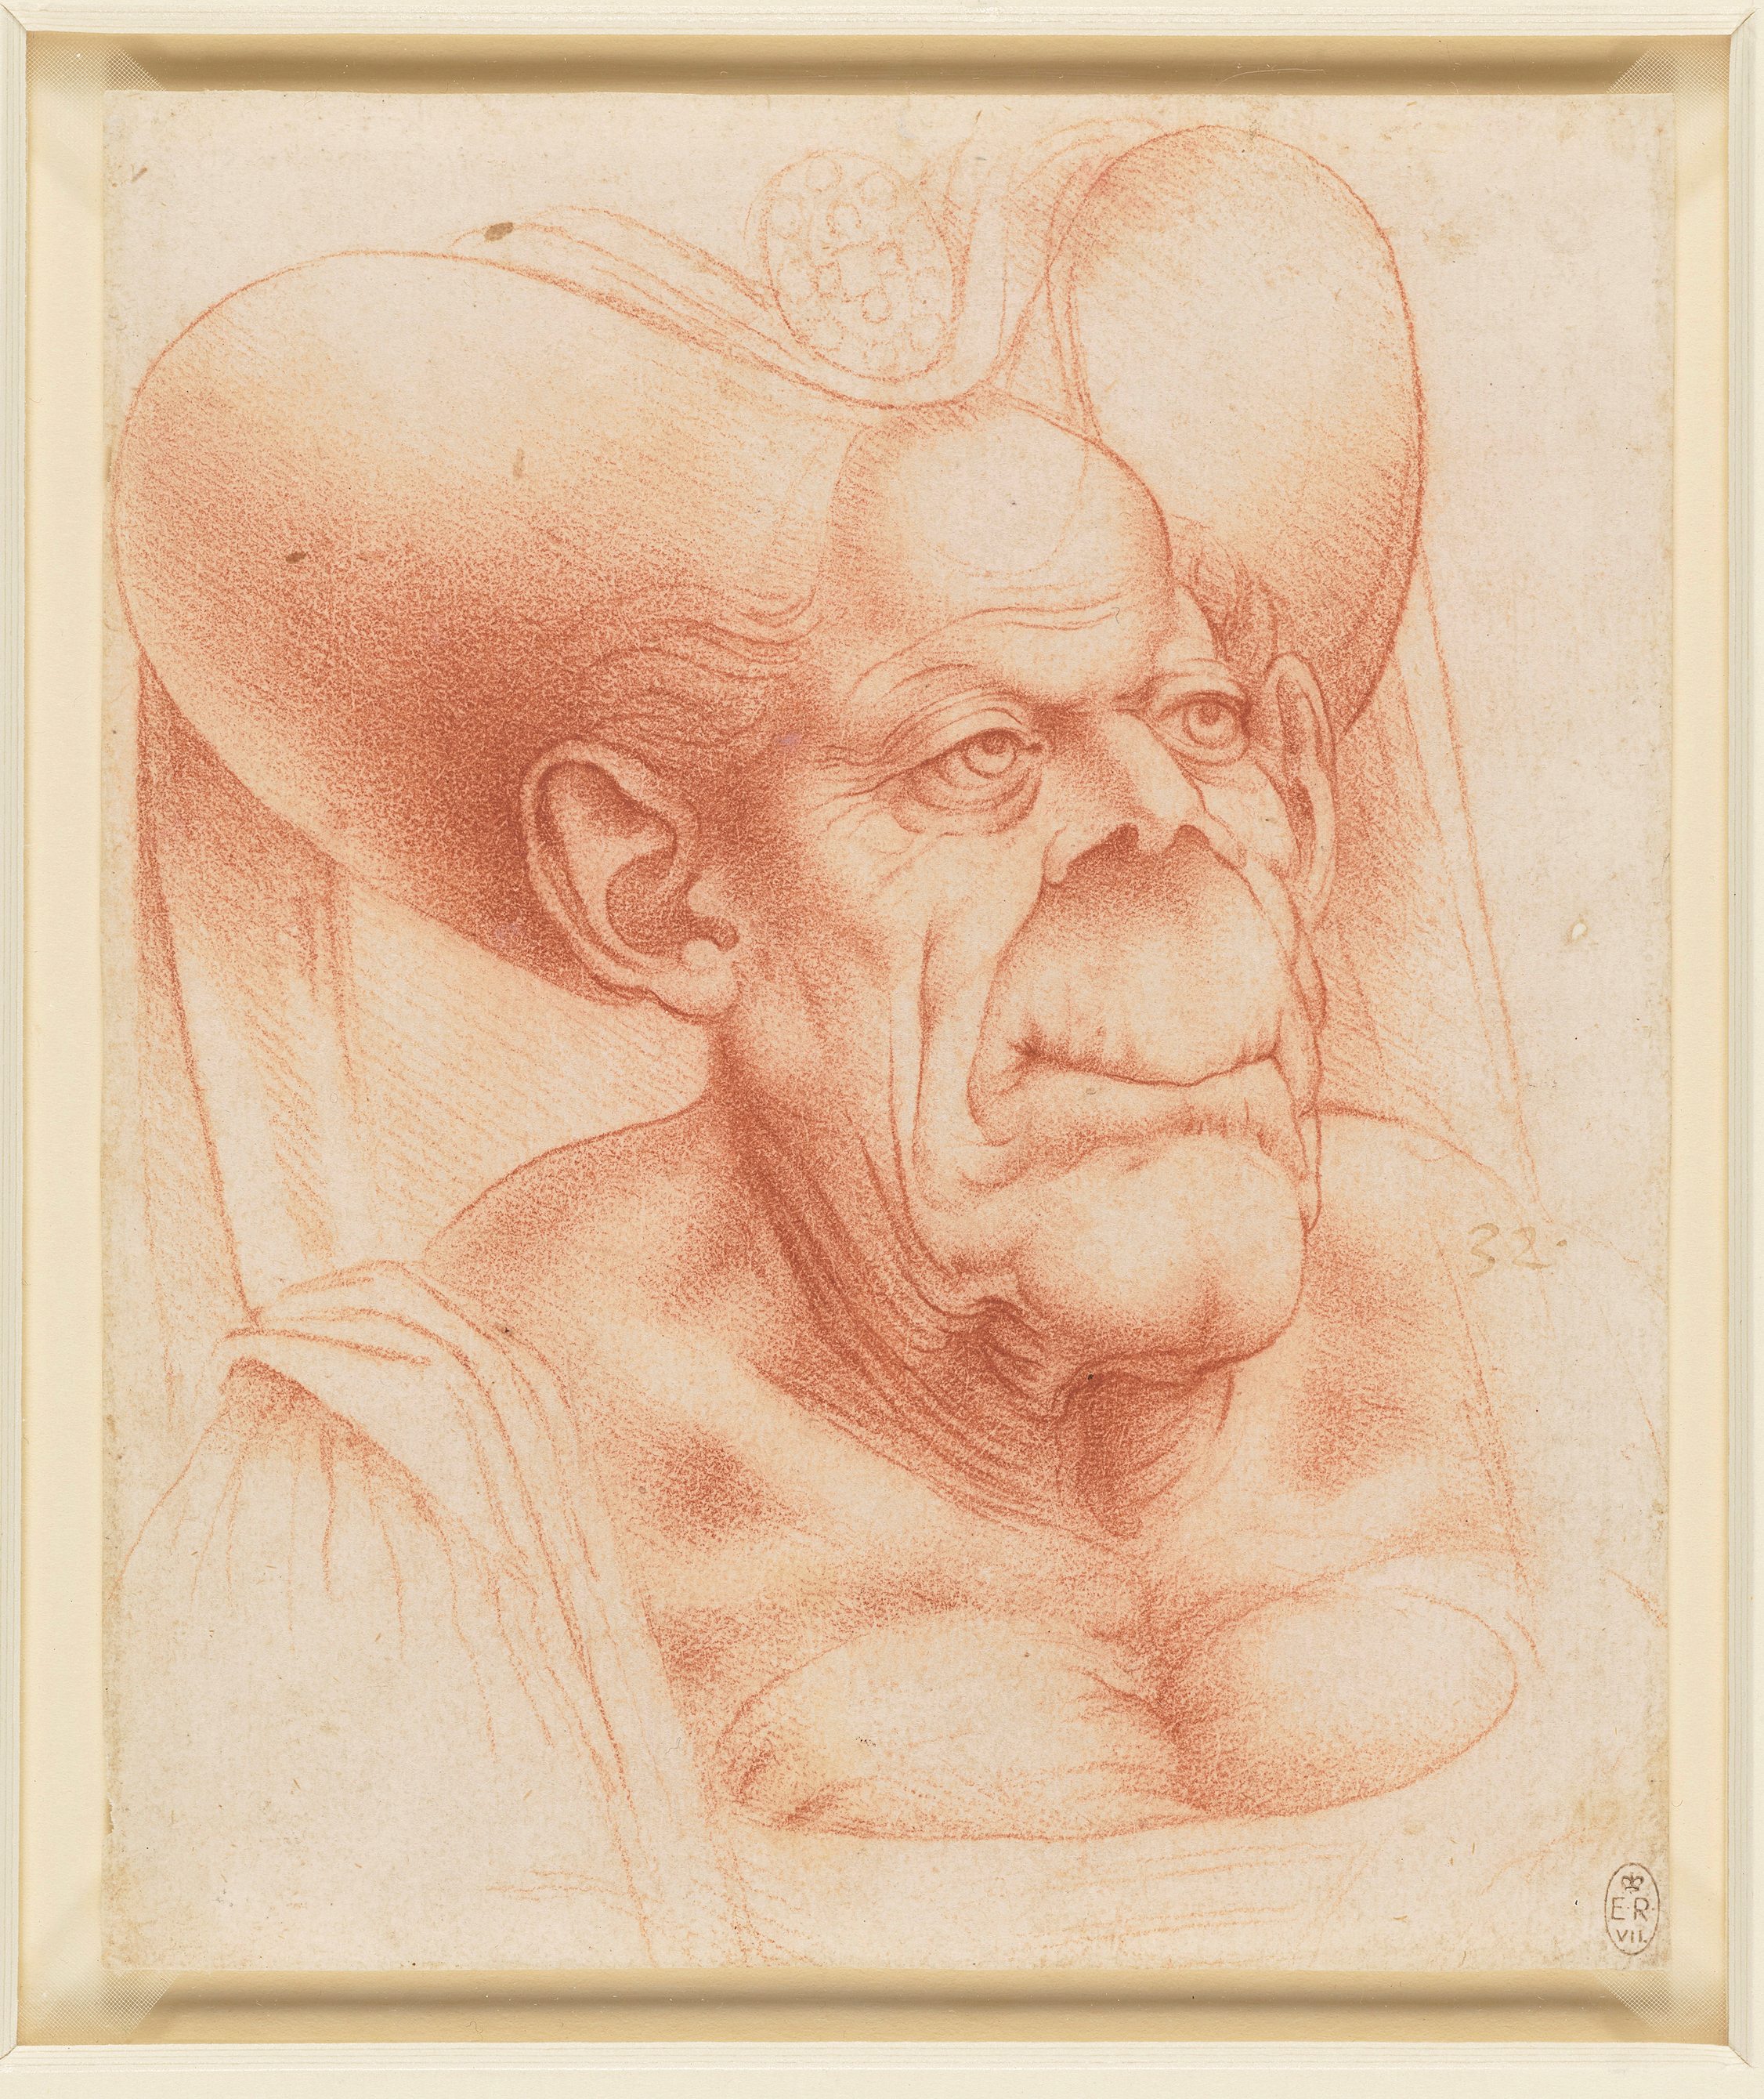 D'après Léonard de Vinci, attribué à Francesco Melzi, "Vieille femme grotesque", vers 1510-20. Prêt par sa Majesté royale le roi Charles III, Royal Collection Trust / © His Majesty King Charles III 2023